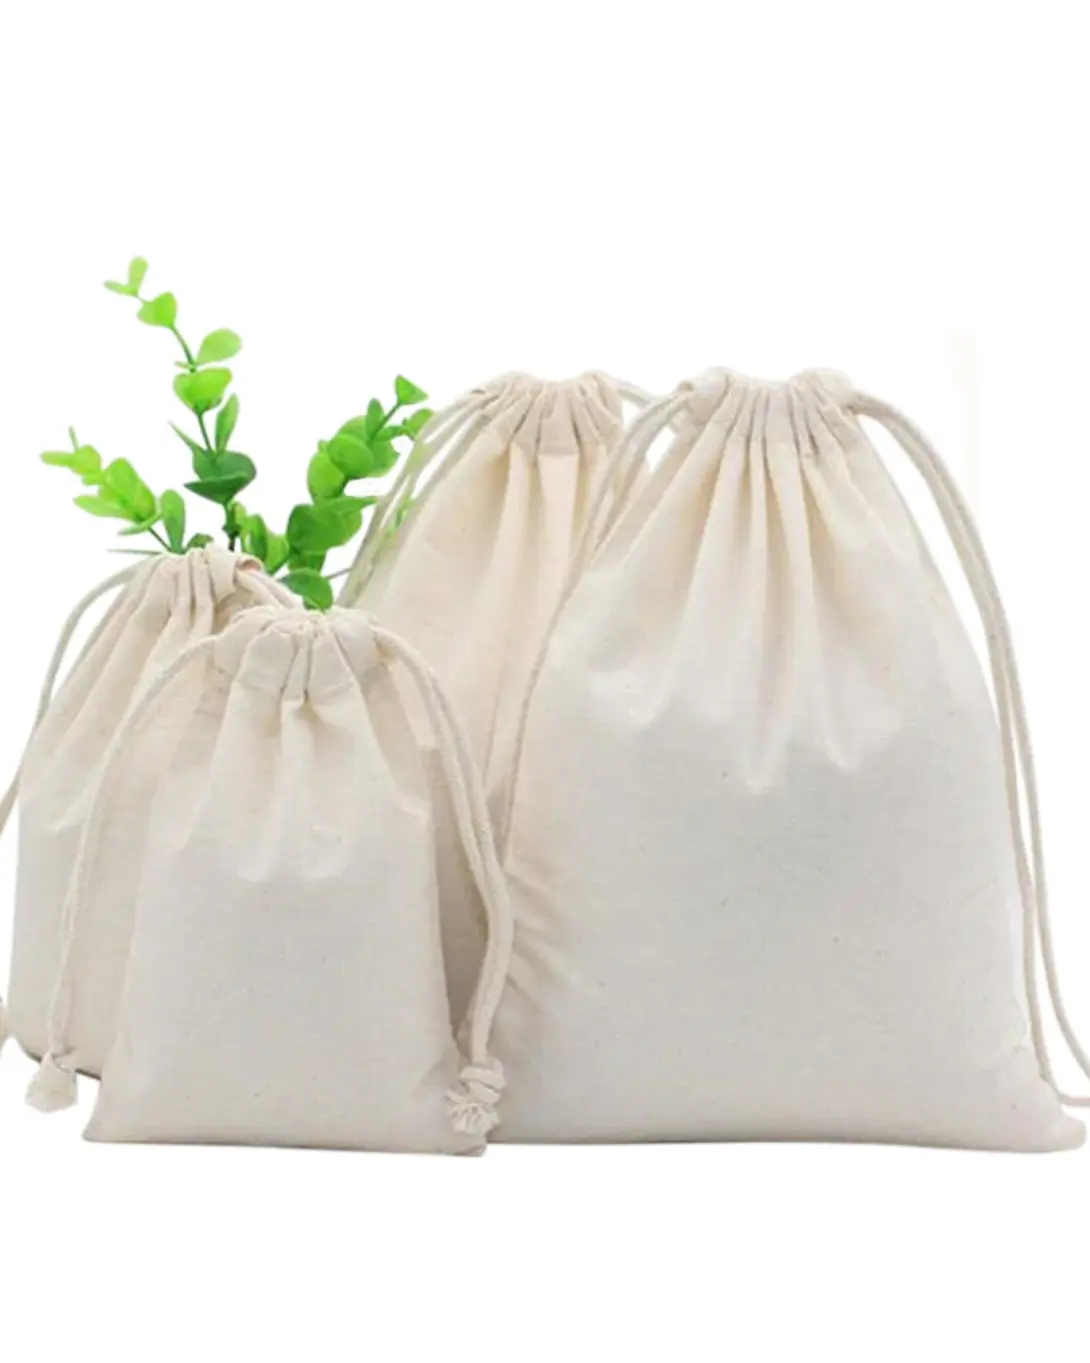 % Alışveriş çantası bez pamuklu muslin takı kılıfı torba büzgülü pamuklu çanta